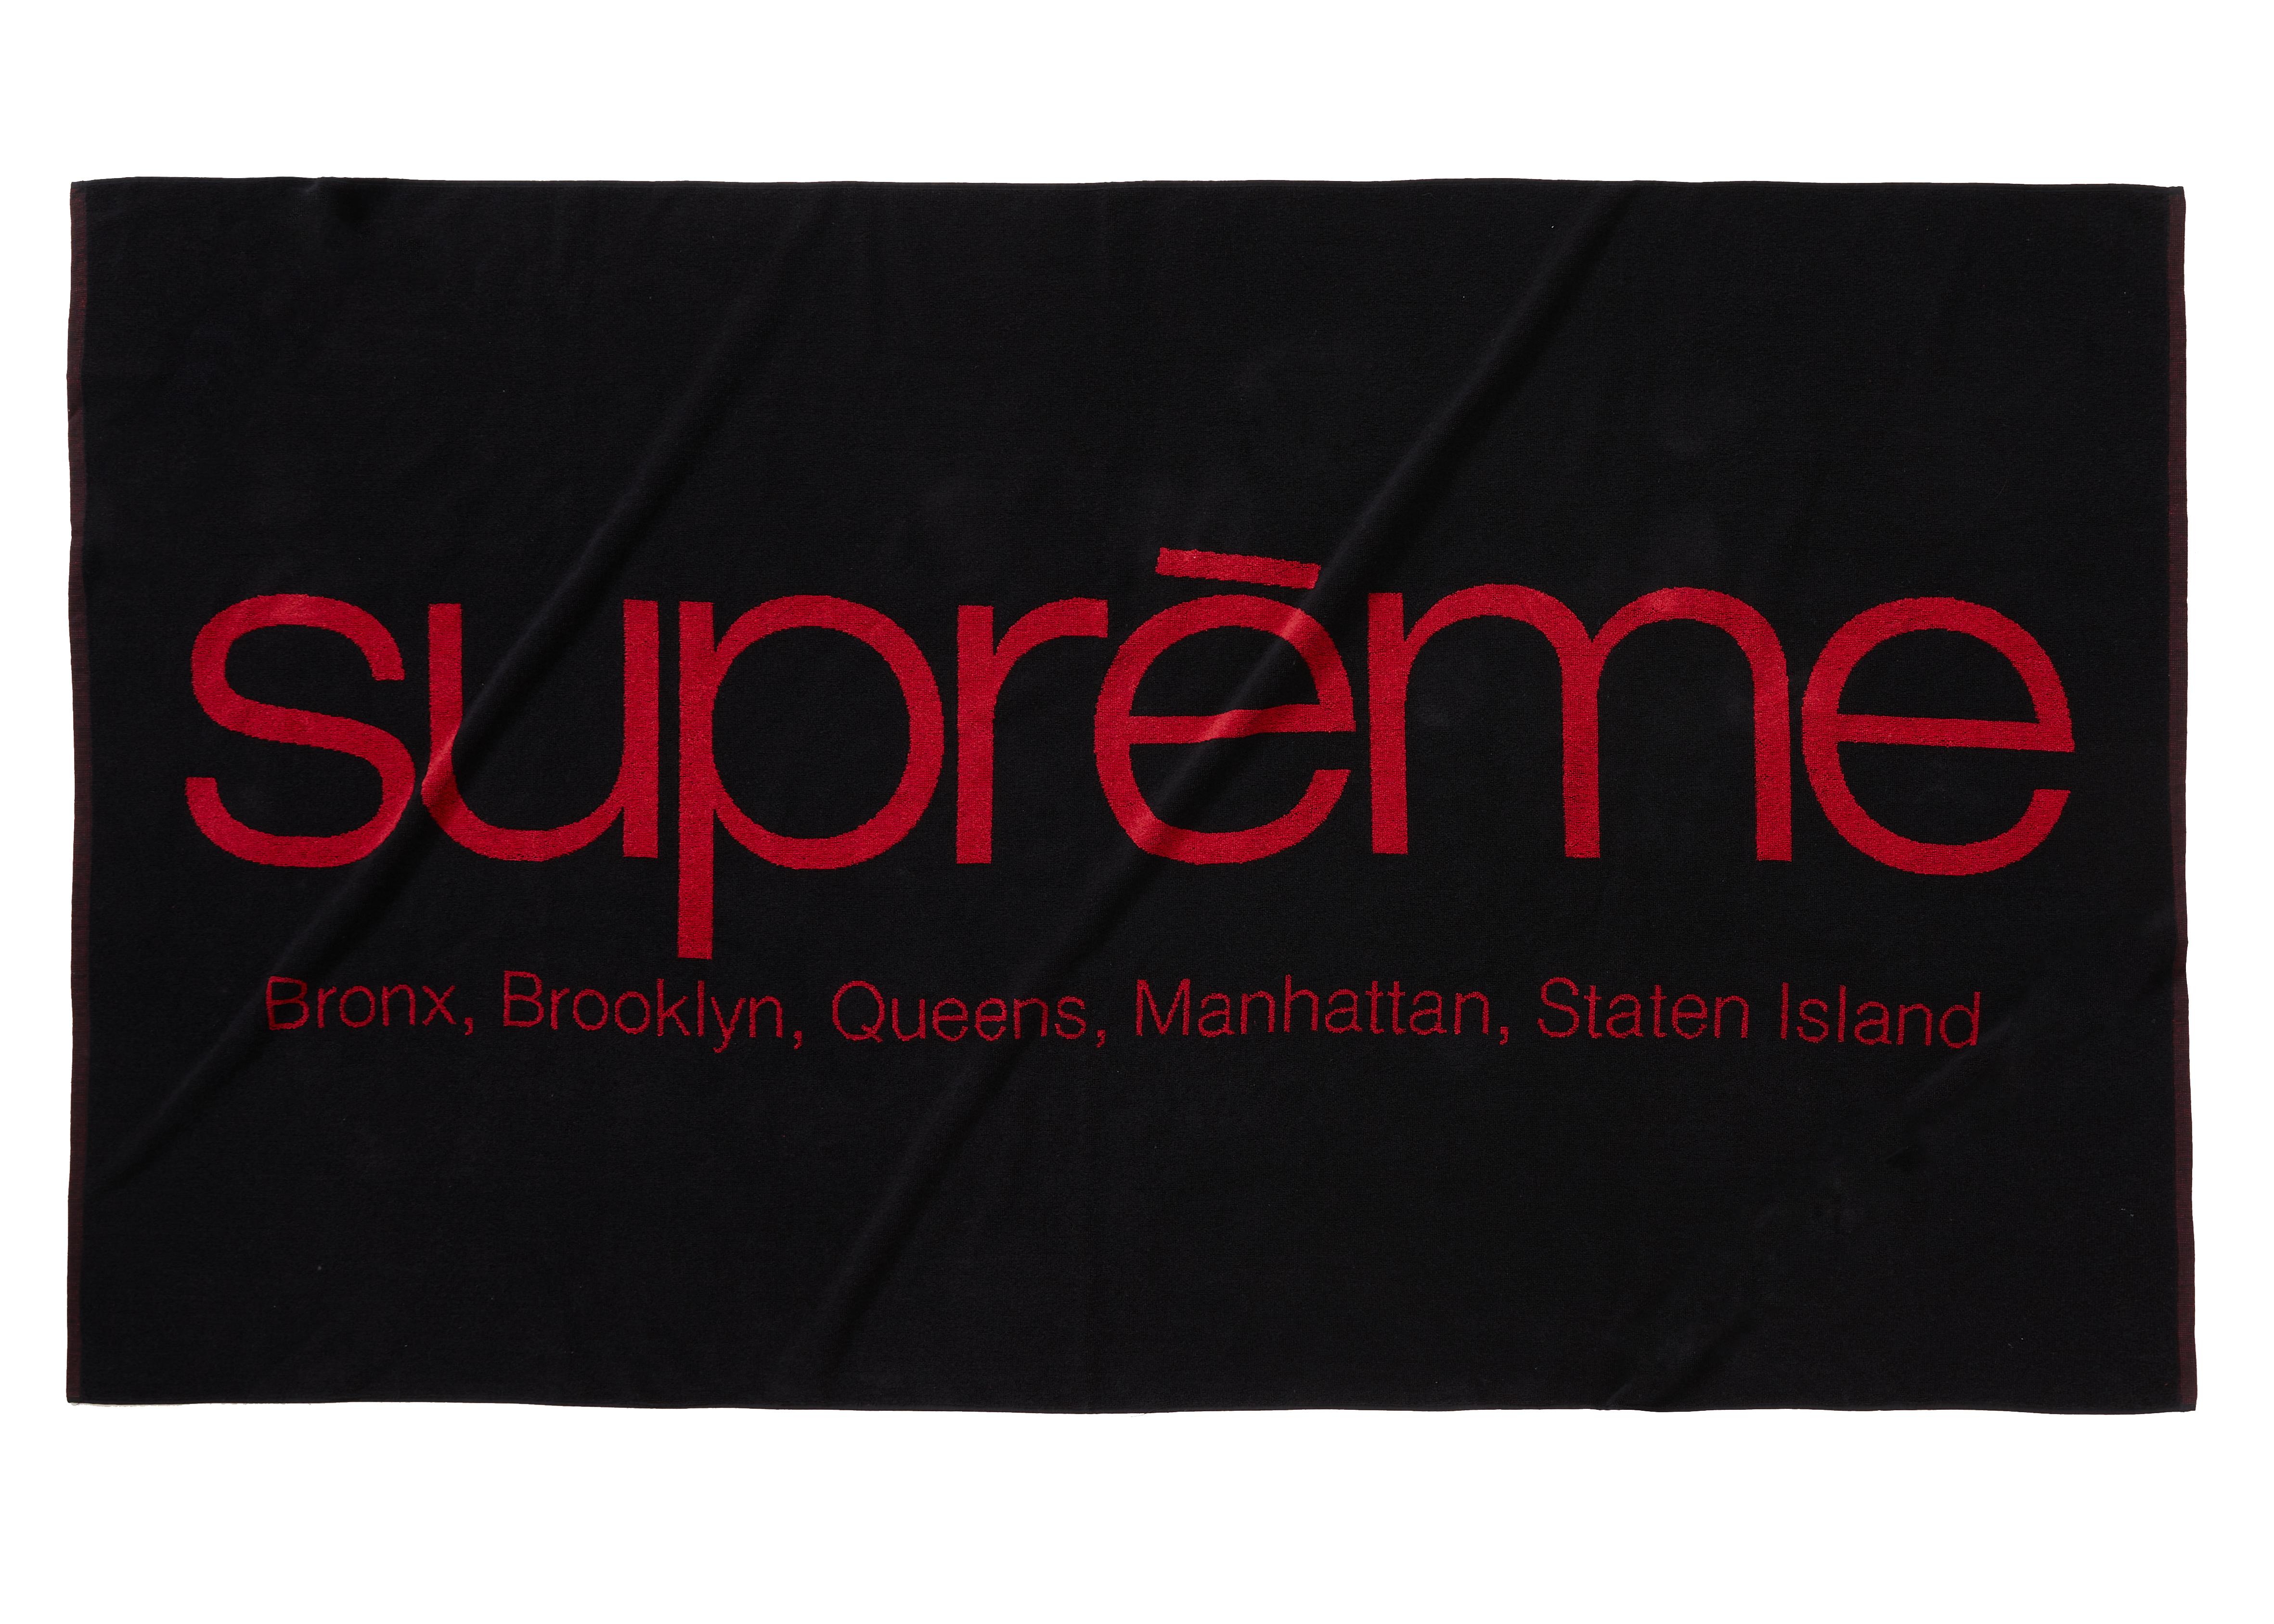 新品　supreme Five Boroughs Towel